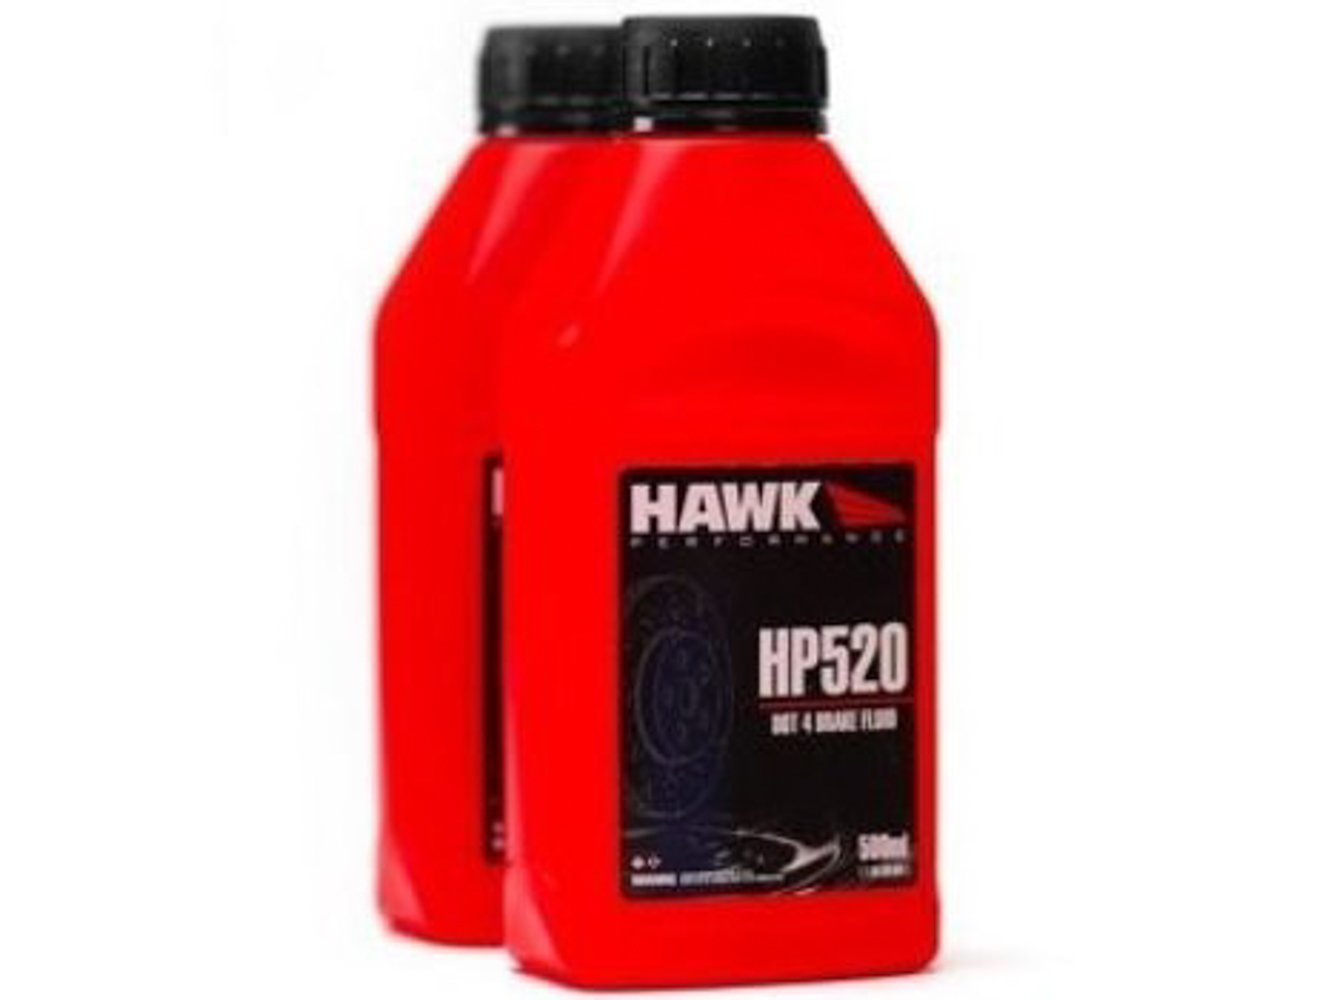 HAWHP520